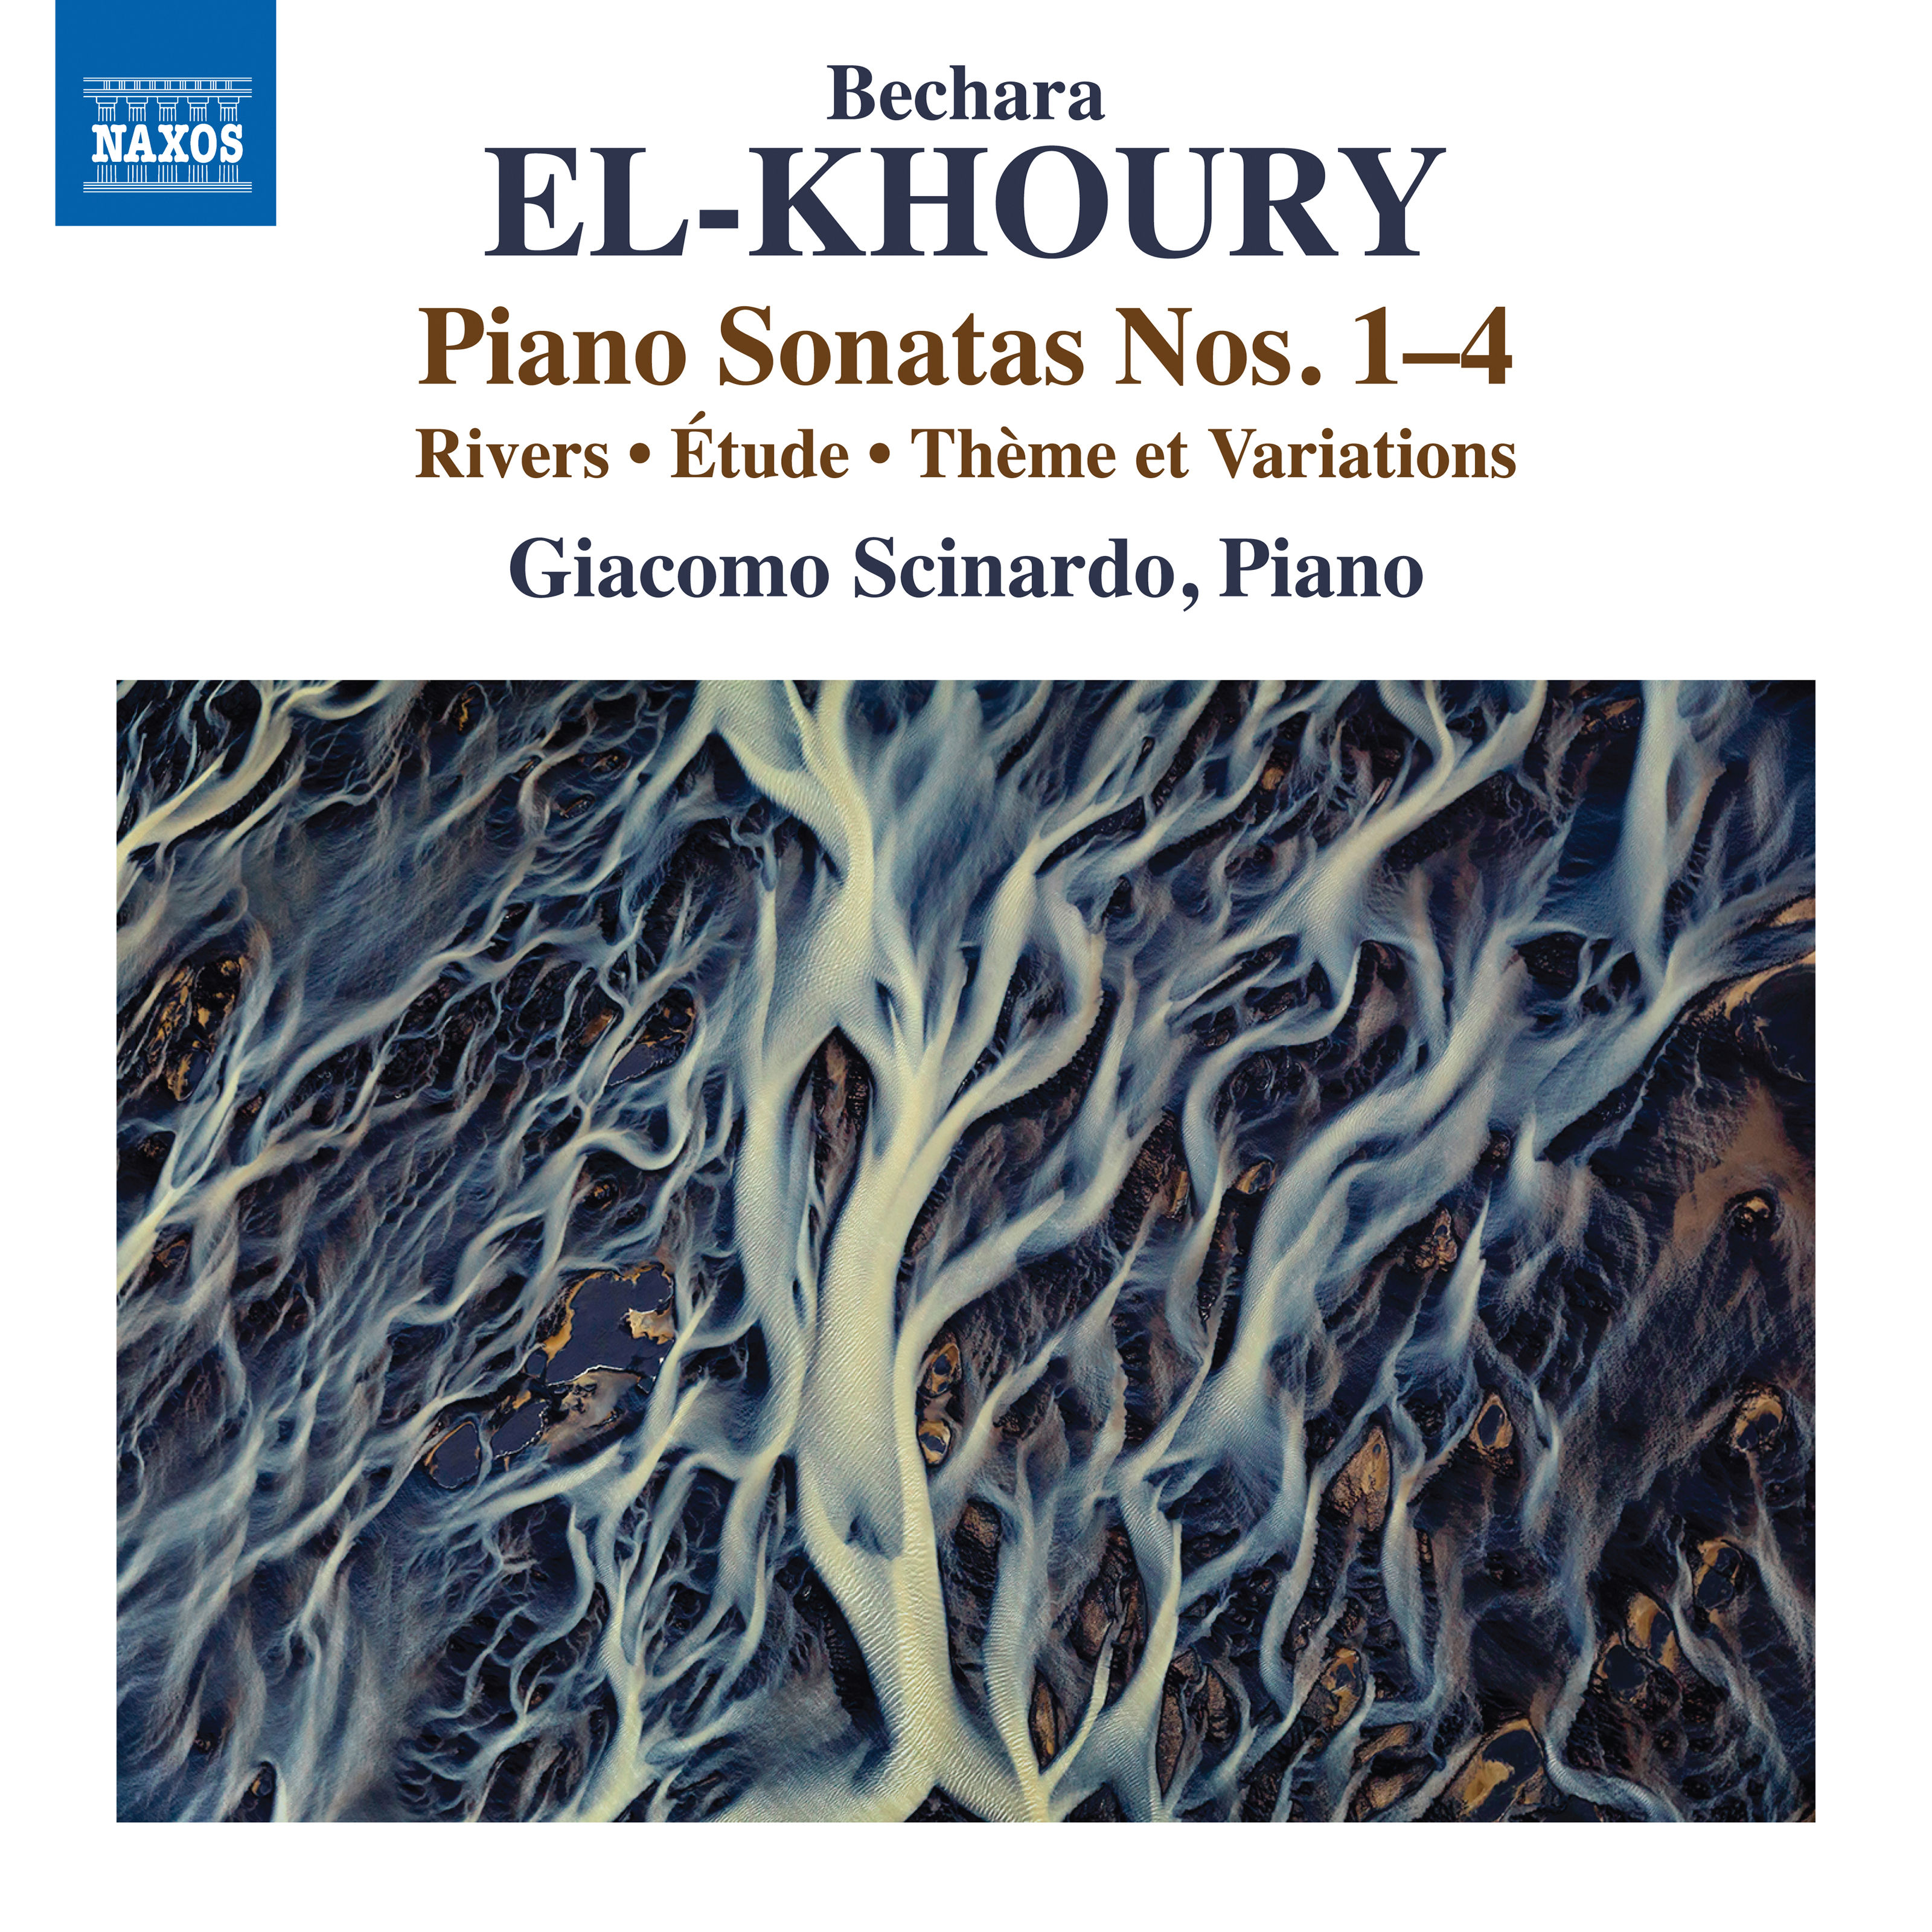 Giacomo Scinardo - Bechara El-Khoury: Works for Piano (2019) [FLAC 24bit/96kHz]